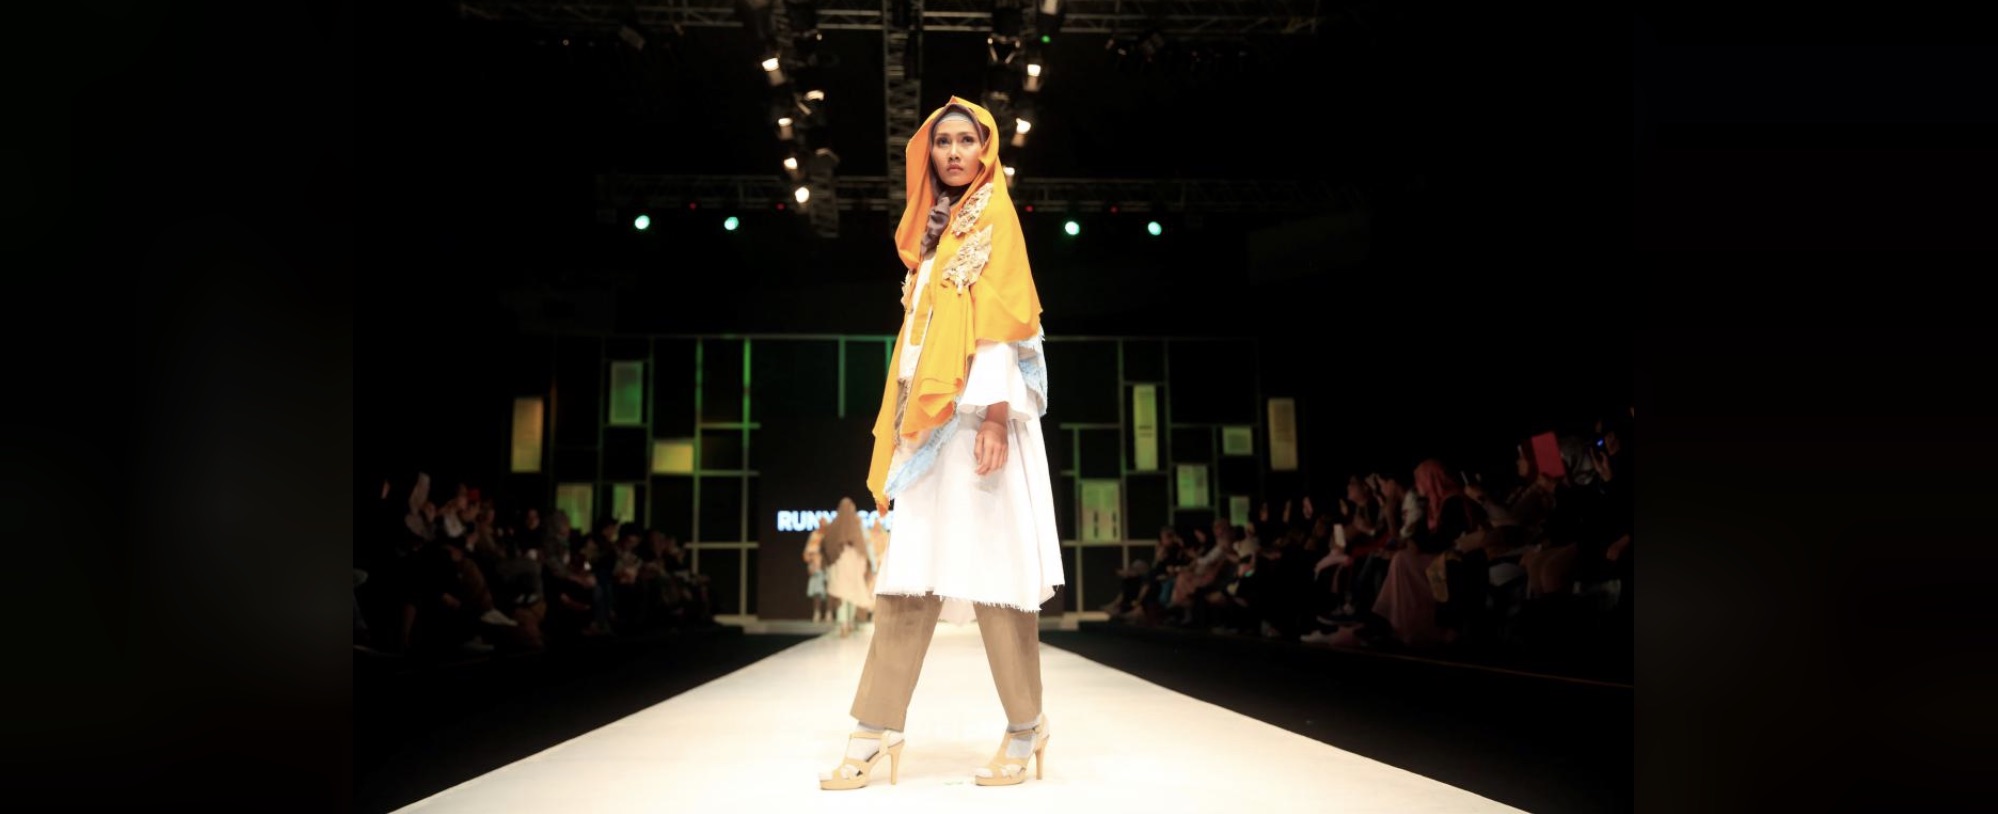 Islamic Fashion School Cuts a Faithful Figure in Indonesia